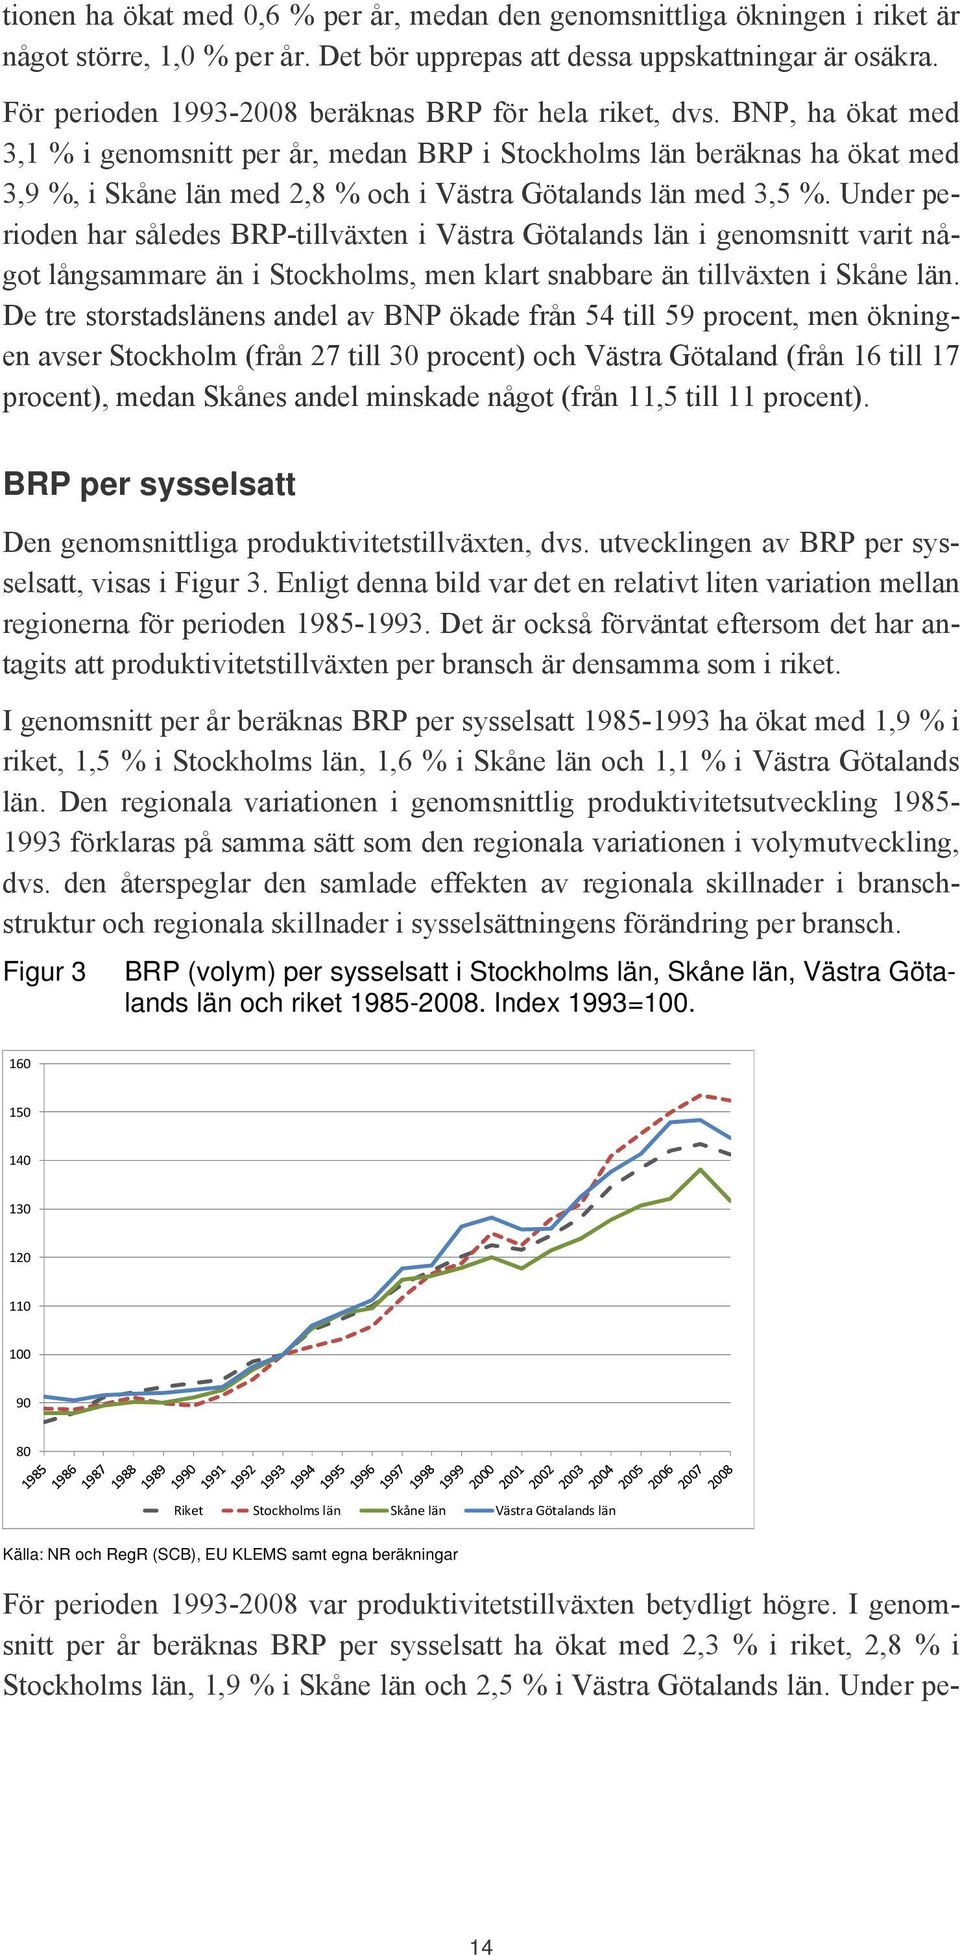 BNP, ha ökat med 3,1 % i genomsnitt per år, medan BRP i Stockholms län beräknas ha ökat med 3,9 %, i Skåne län med 2,8 % och i Västra Götalands län med 3,5 %.